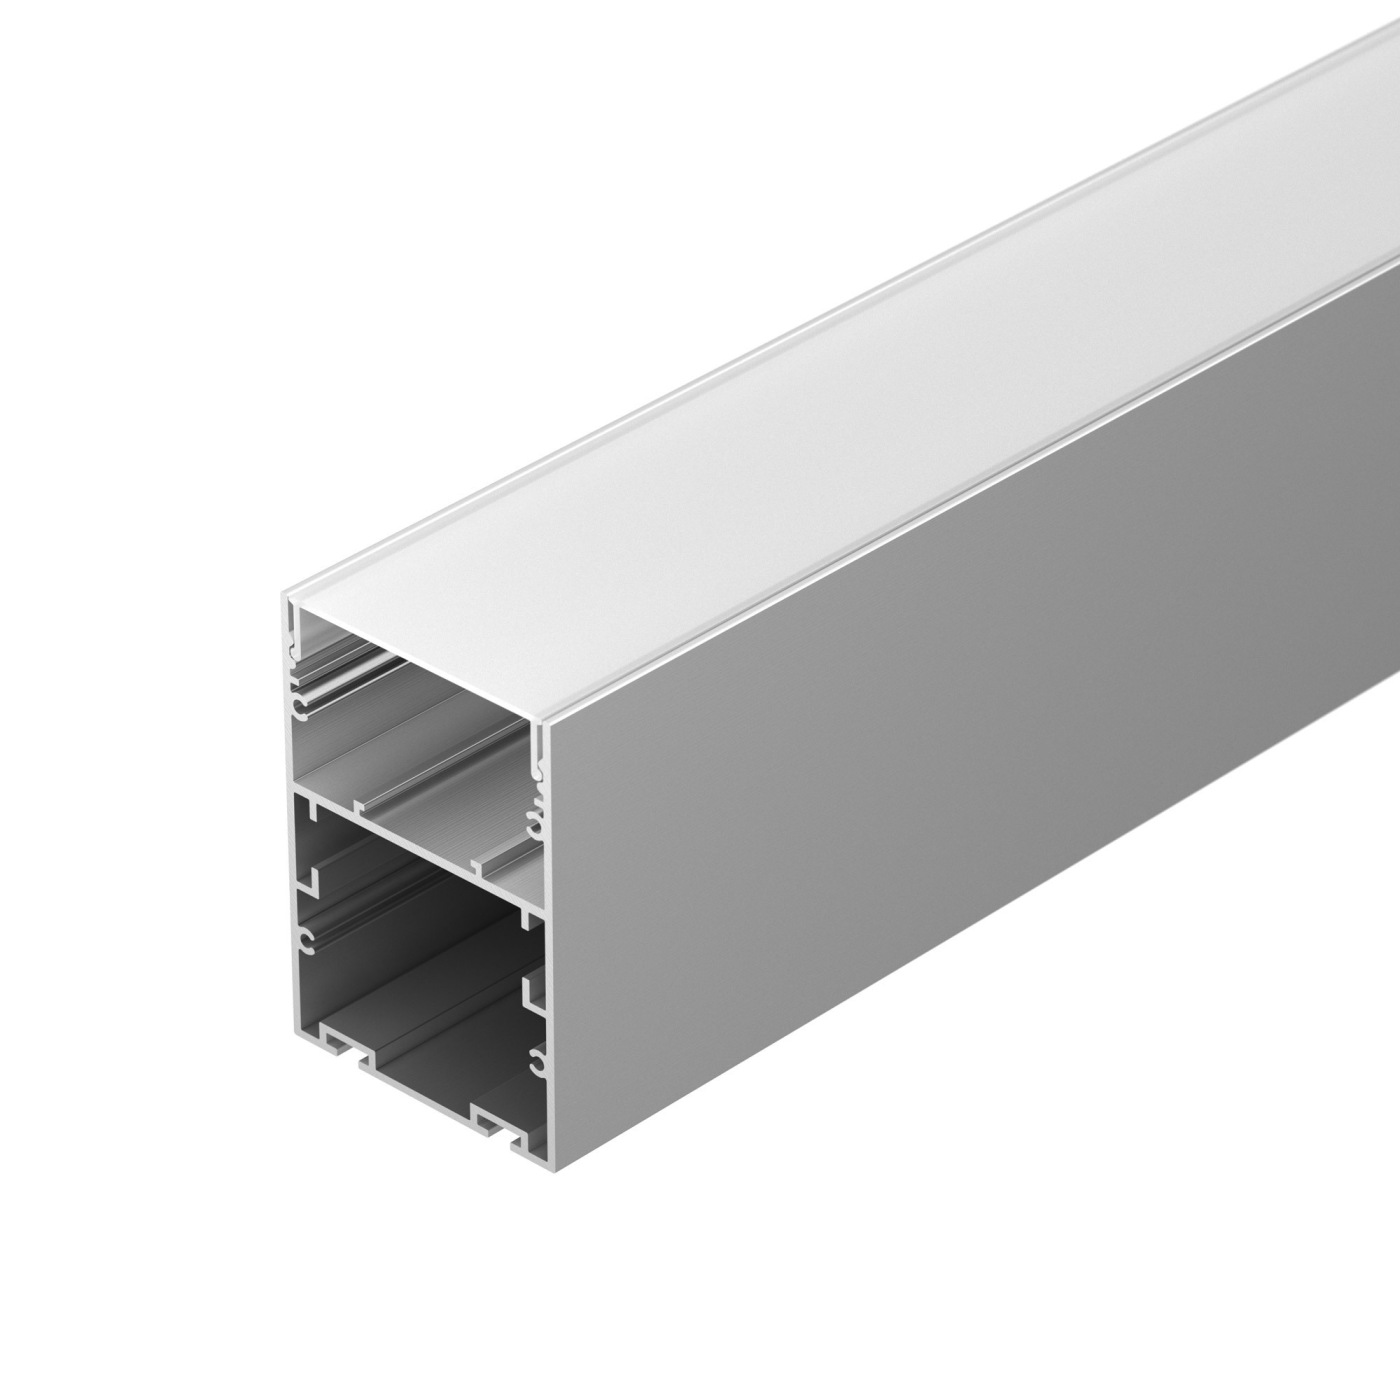 Профиль ARH-LINE-6085-2000 ANOD профиль алюминиевый накладной подвесной с отсеком для бп серебро cab267